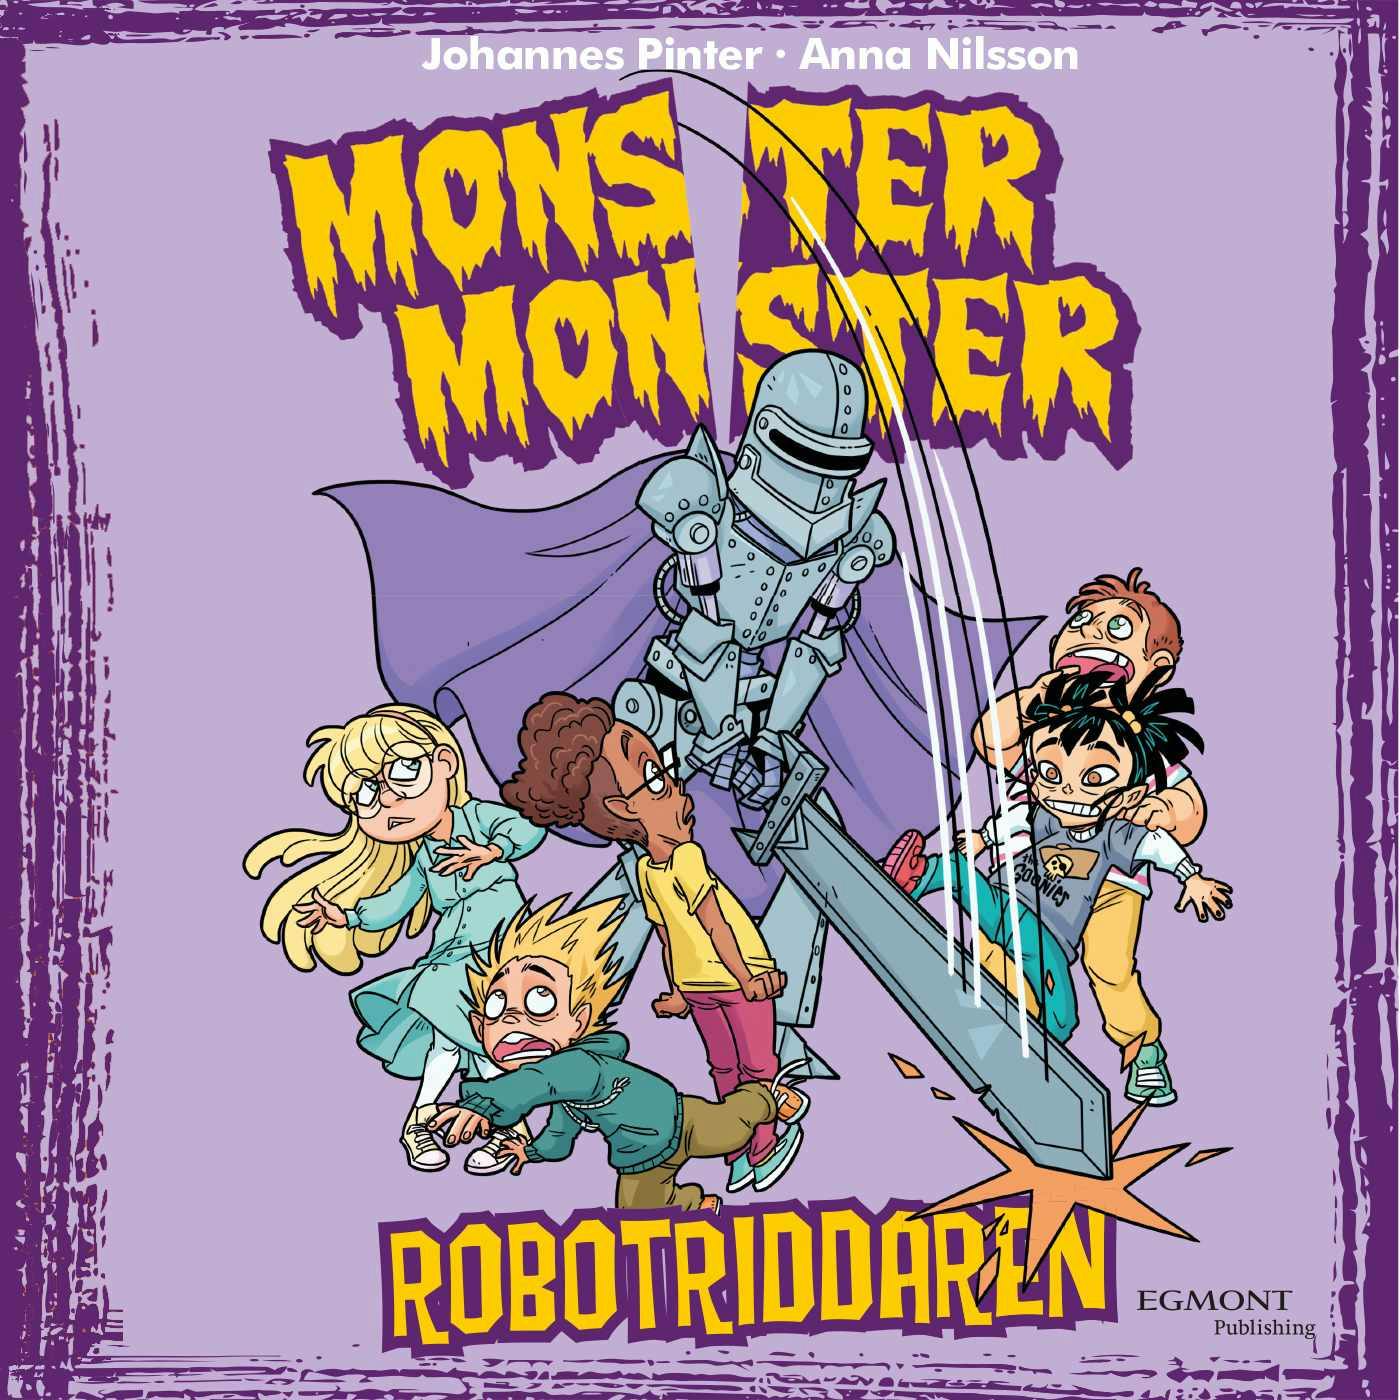 Monster Monster 9 Robotriddaren - Johannes Pinter